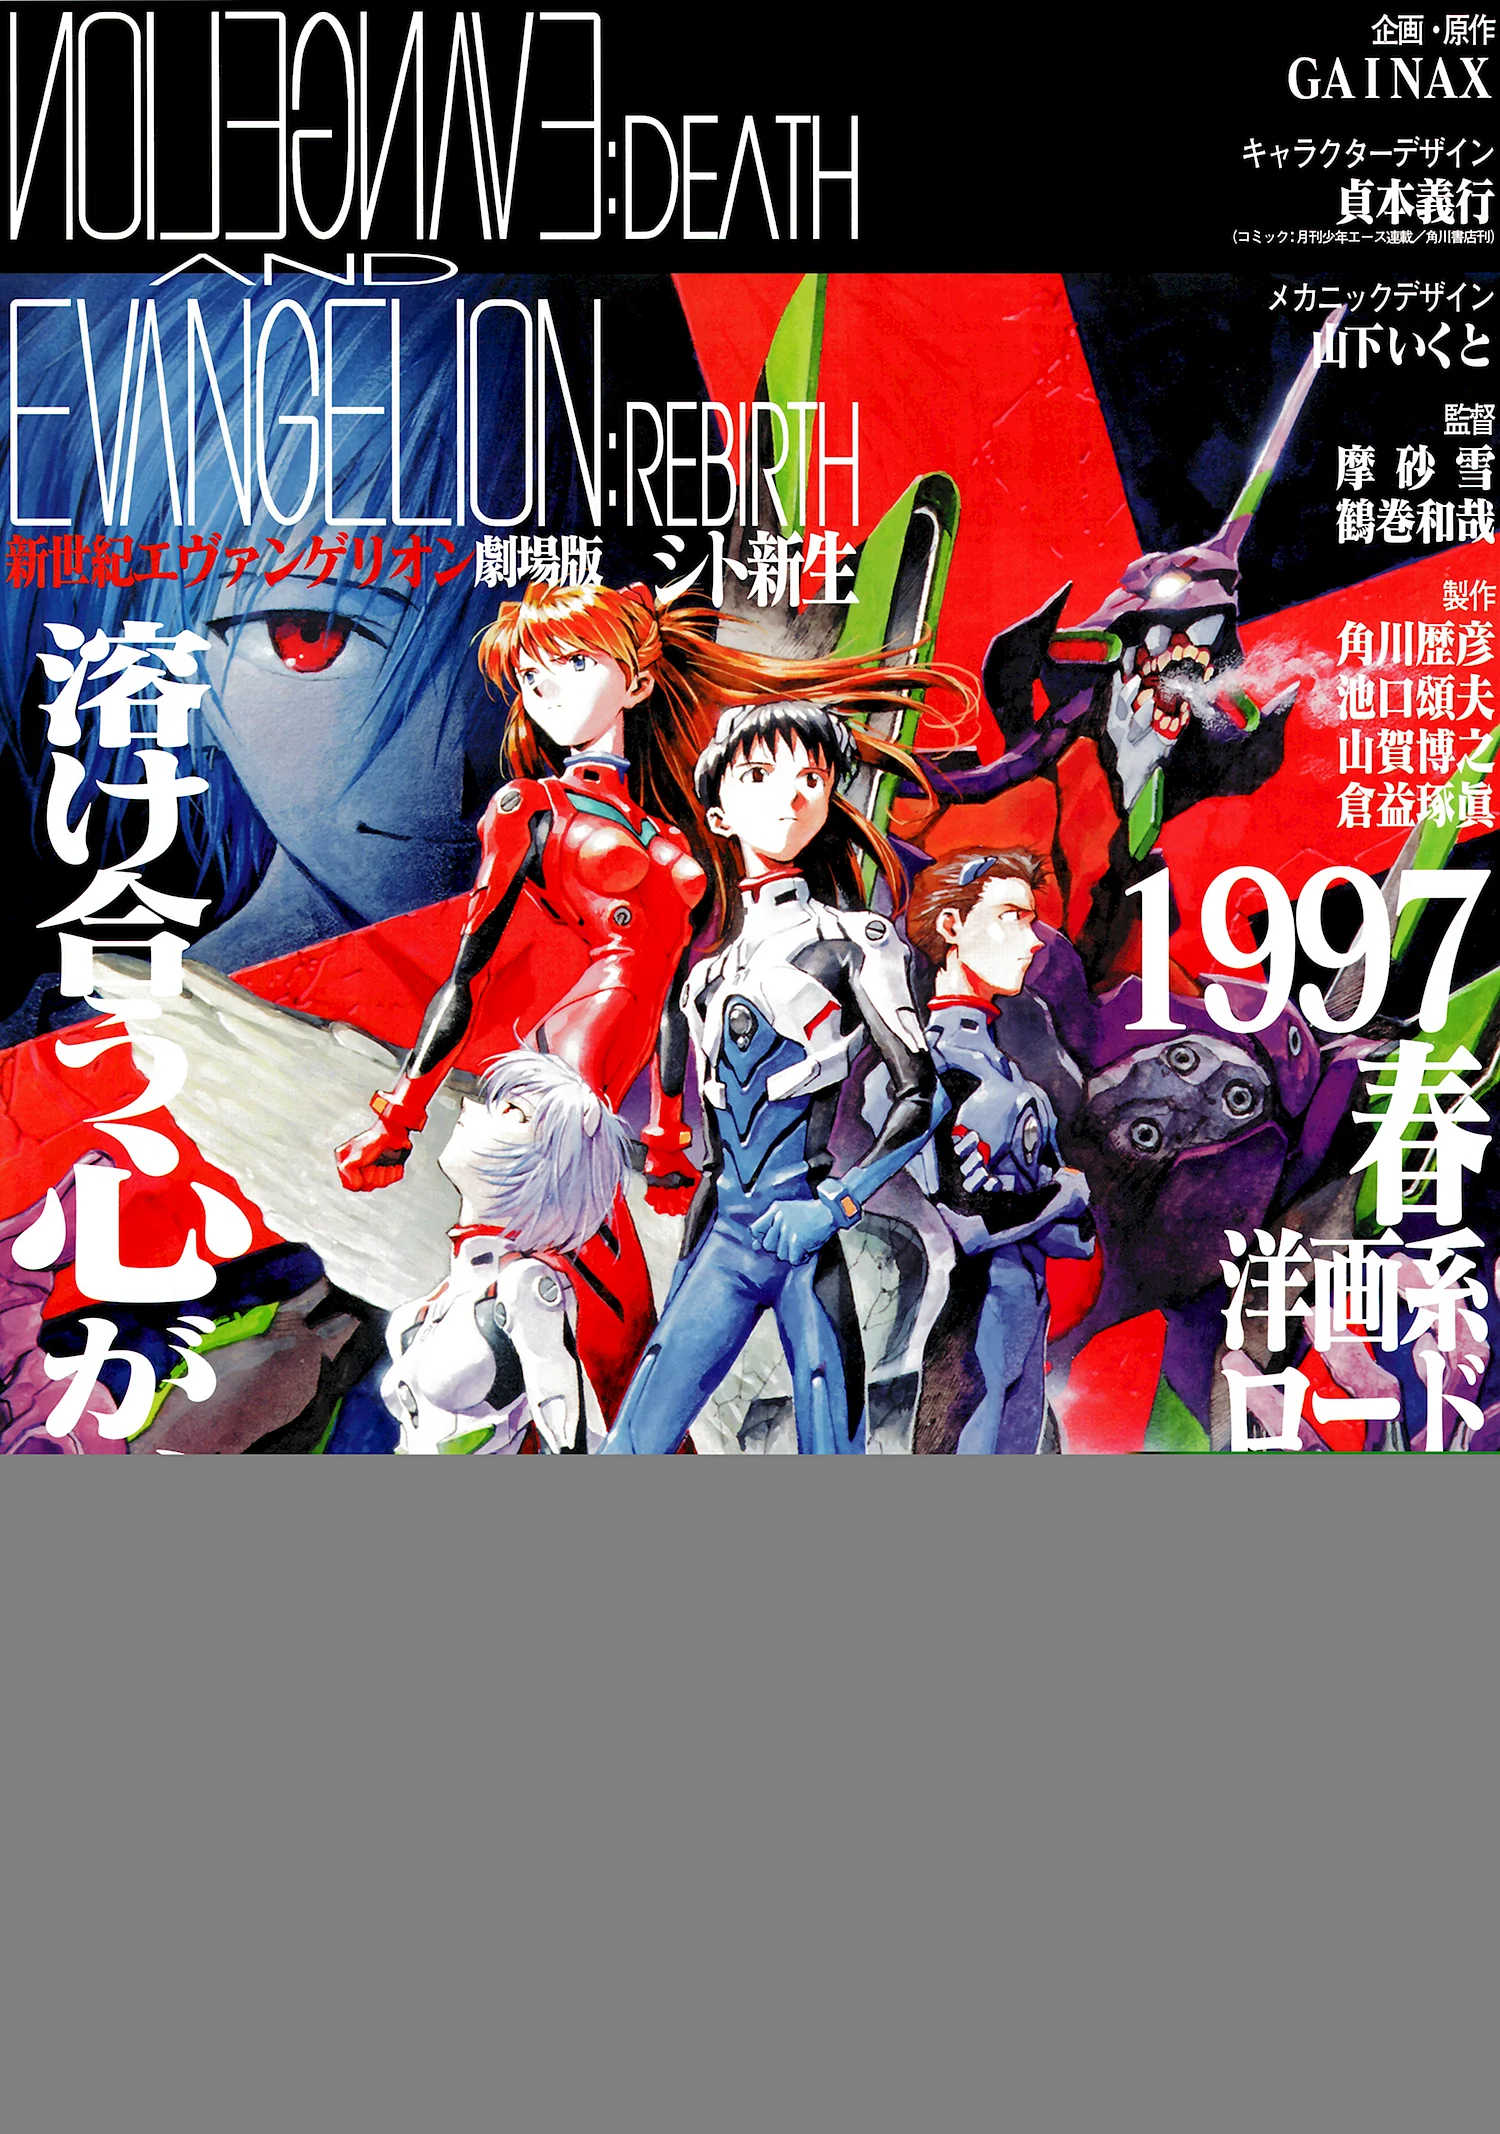 Neon Genesis Evangelion Death & Rebirth Постер